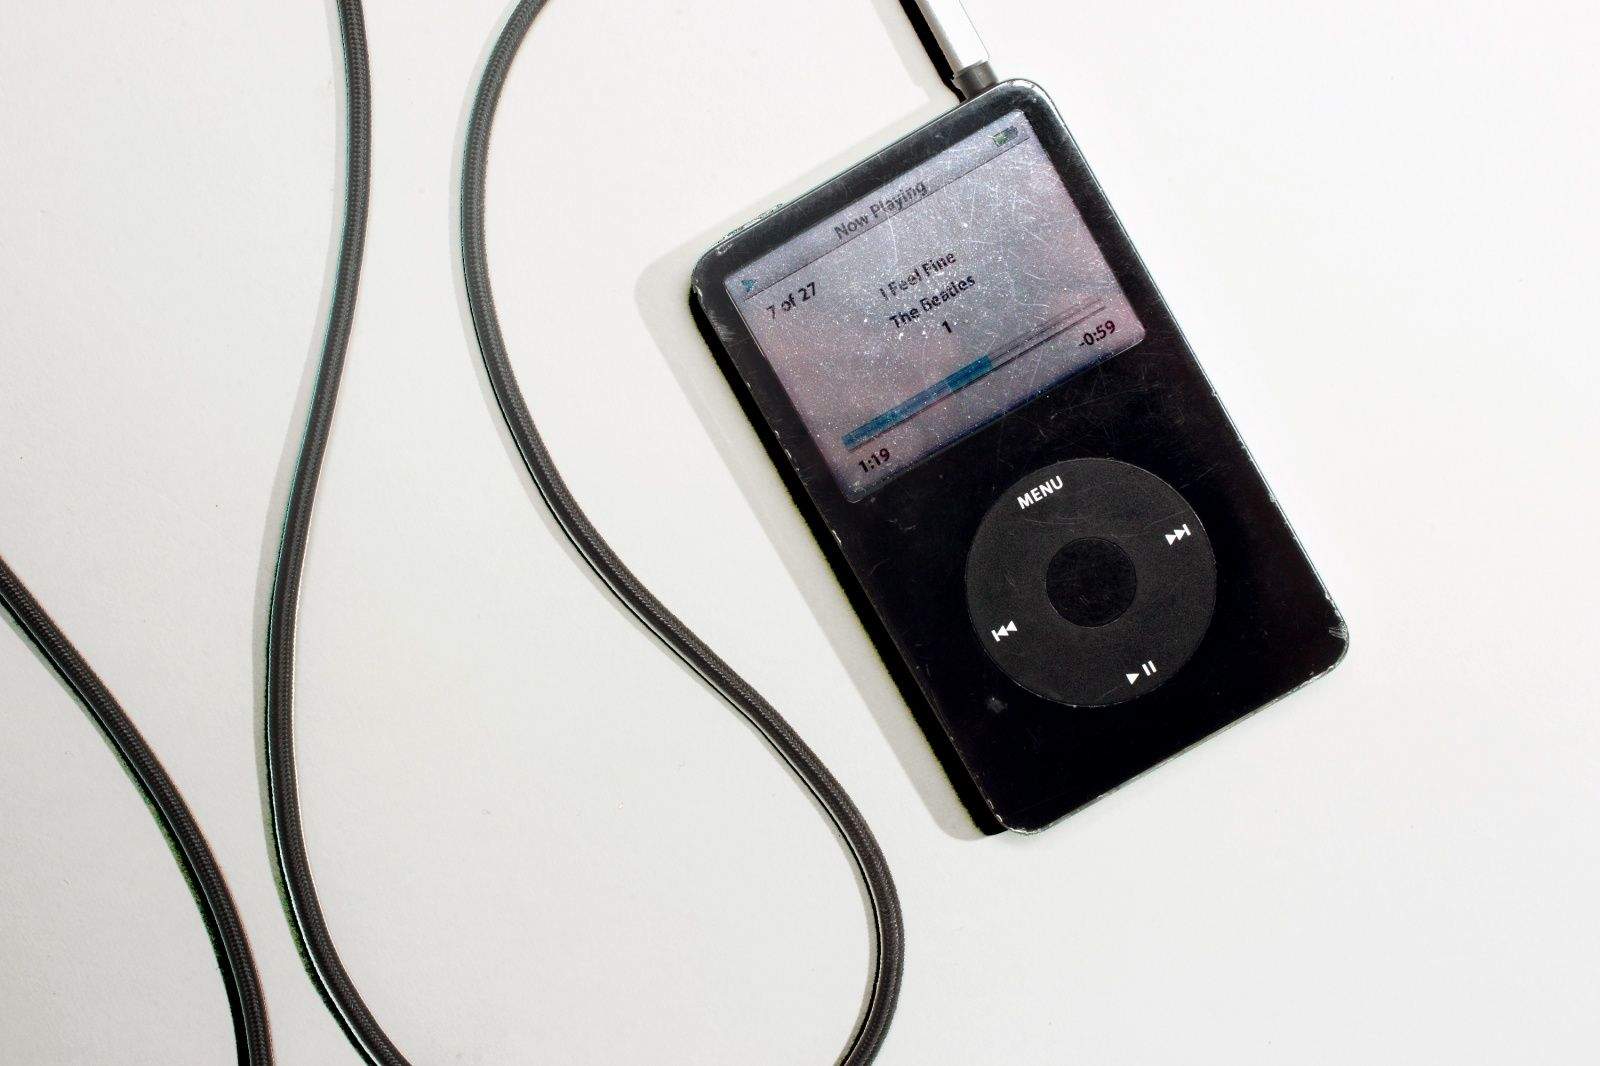 Этот день в истории Apple: iPod выводит прибыль Apple на новый уровень